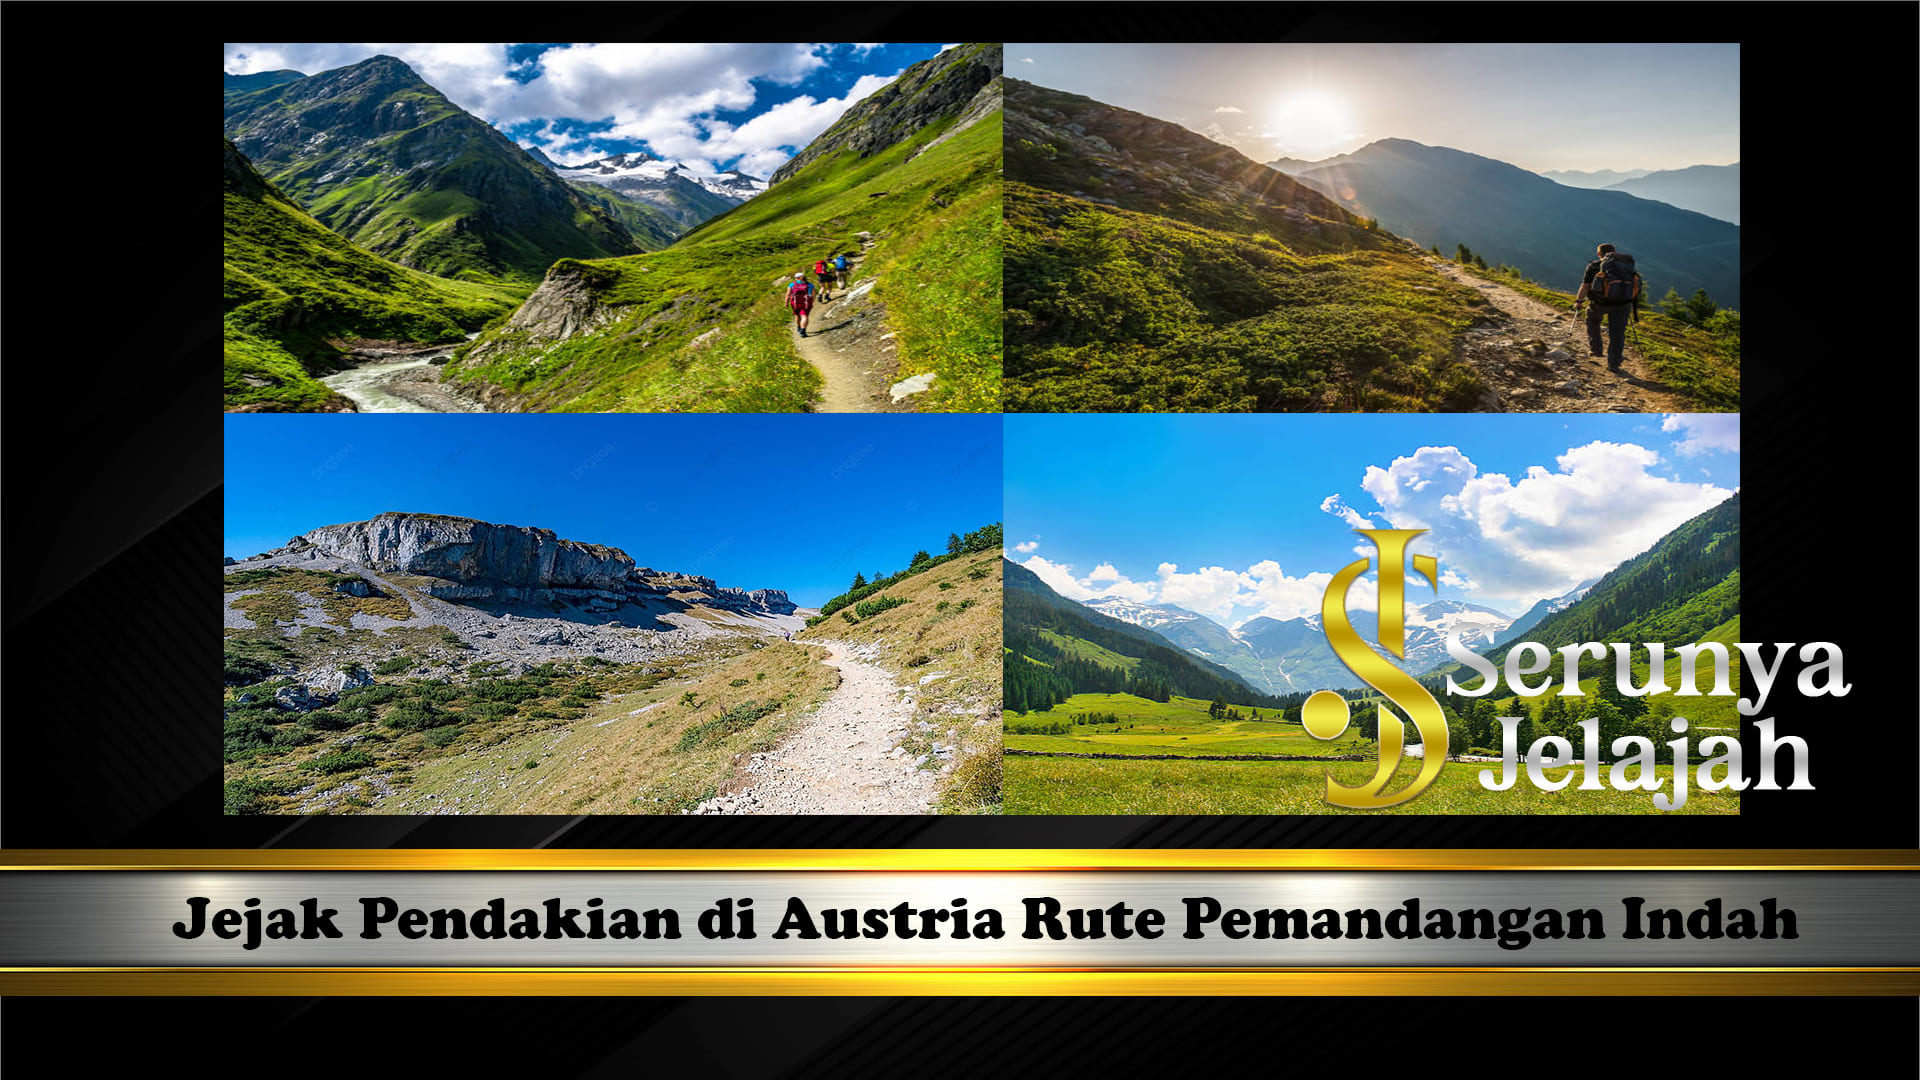 Jejak Pendakian di Austria Rute Pemandangan Indah